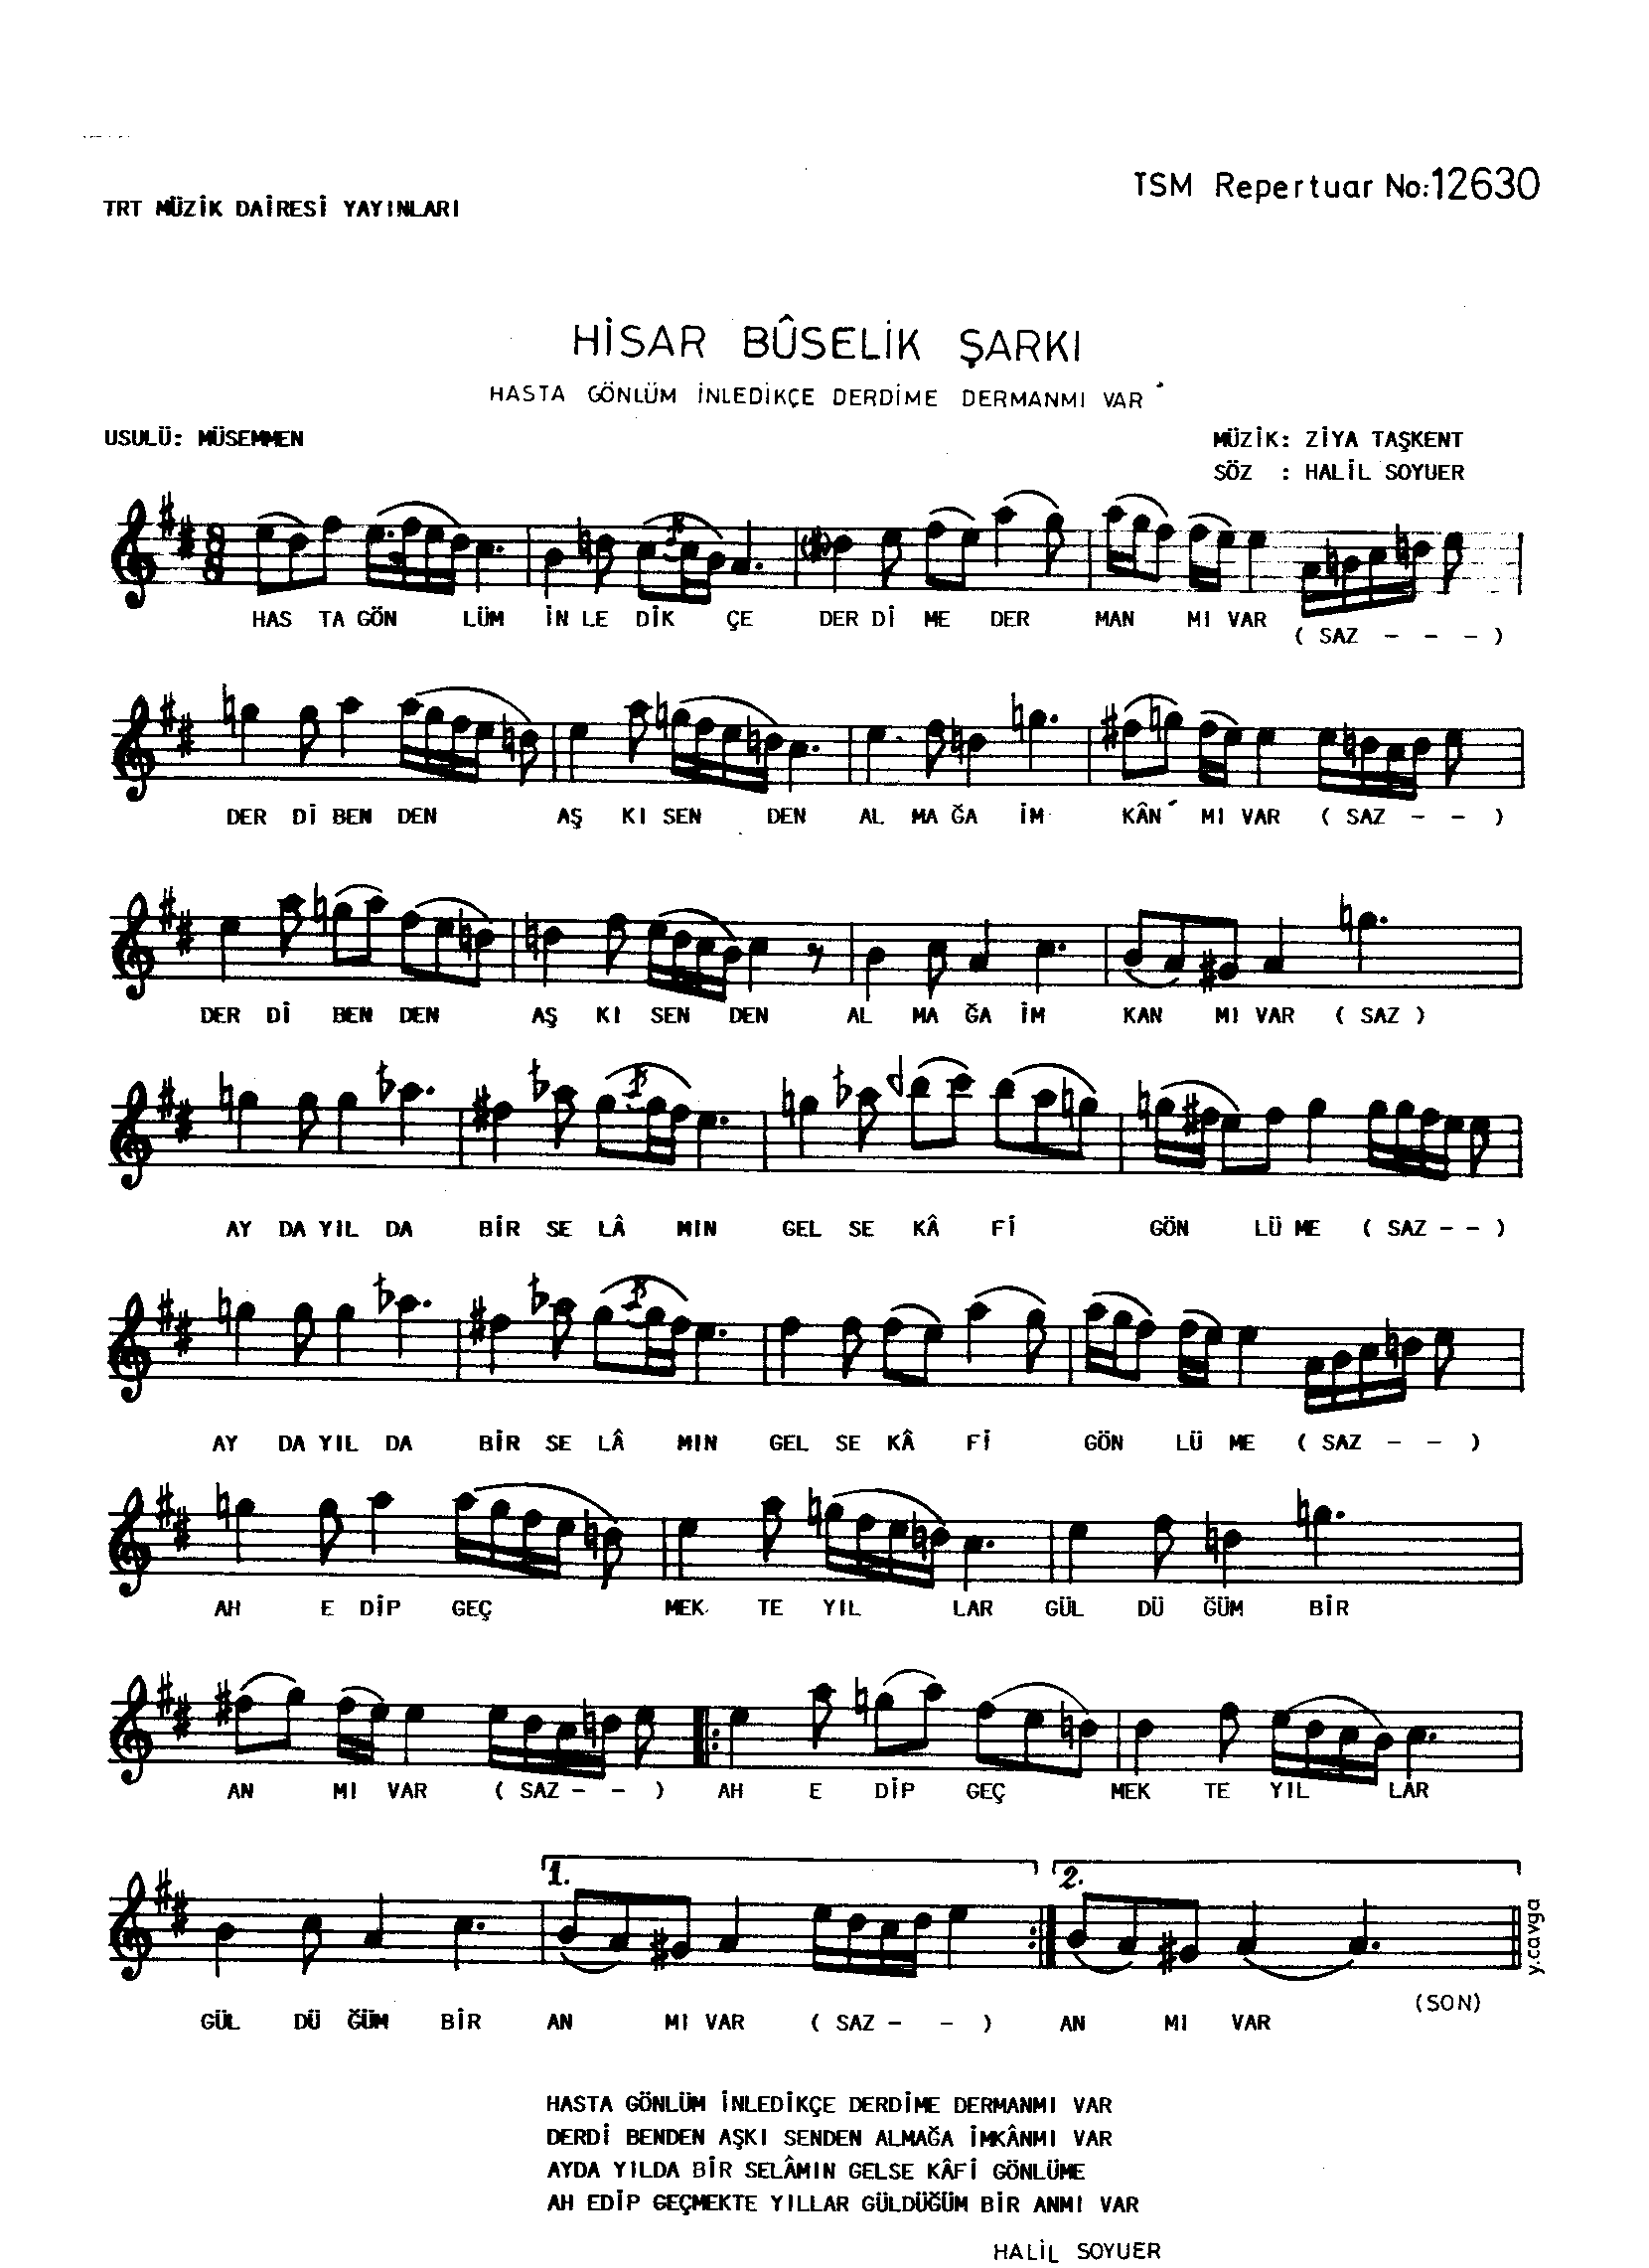 Hisâr-Bûselik - Şarkı - Ziyâ Taşkent - Sayfa 1